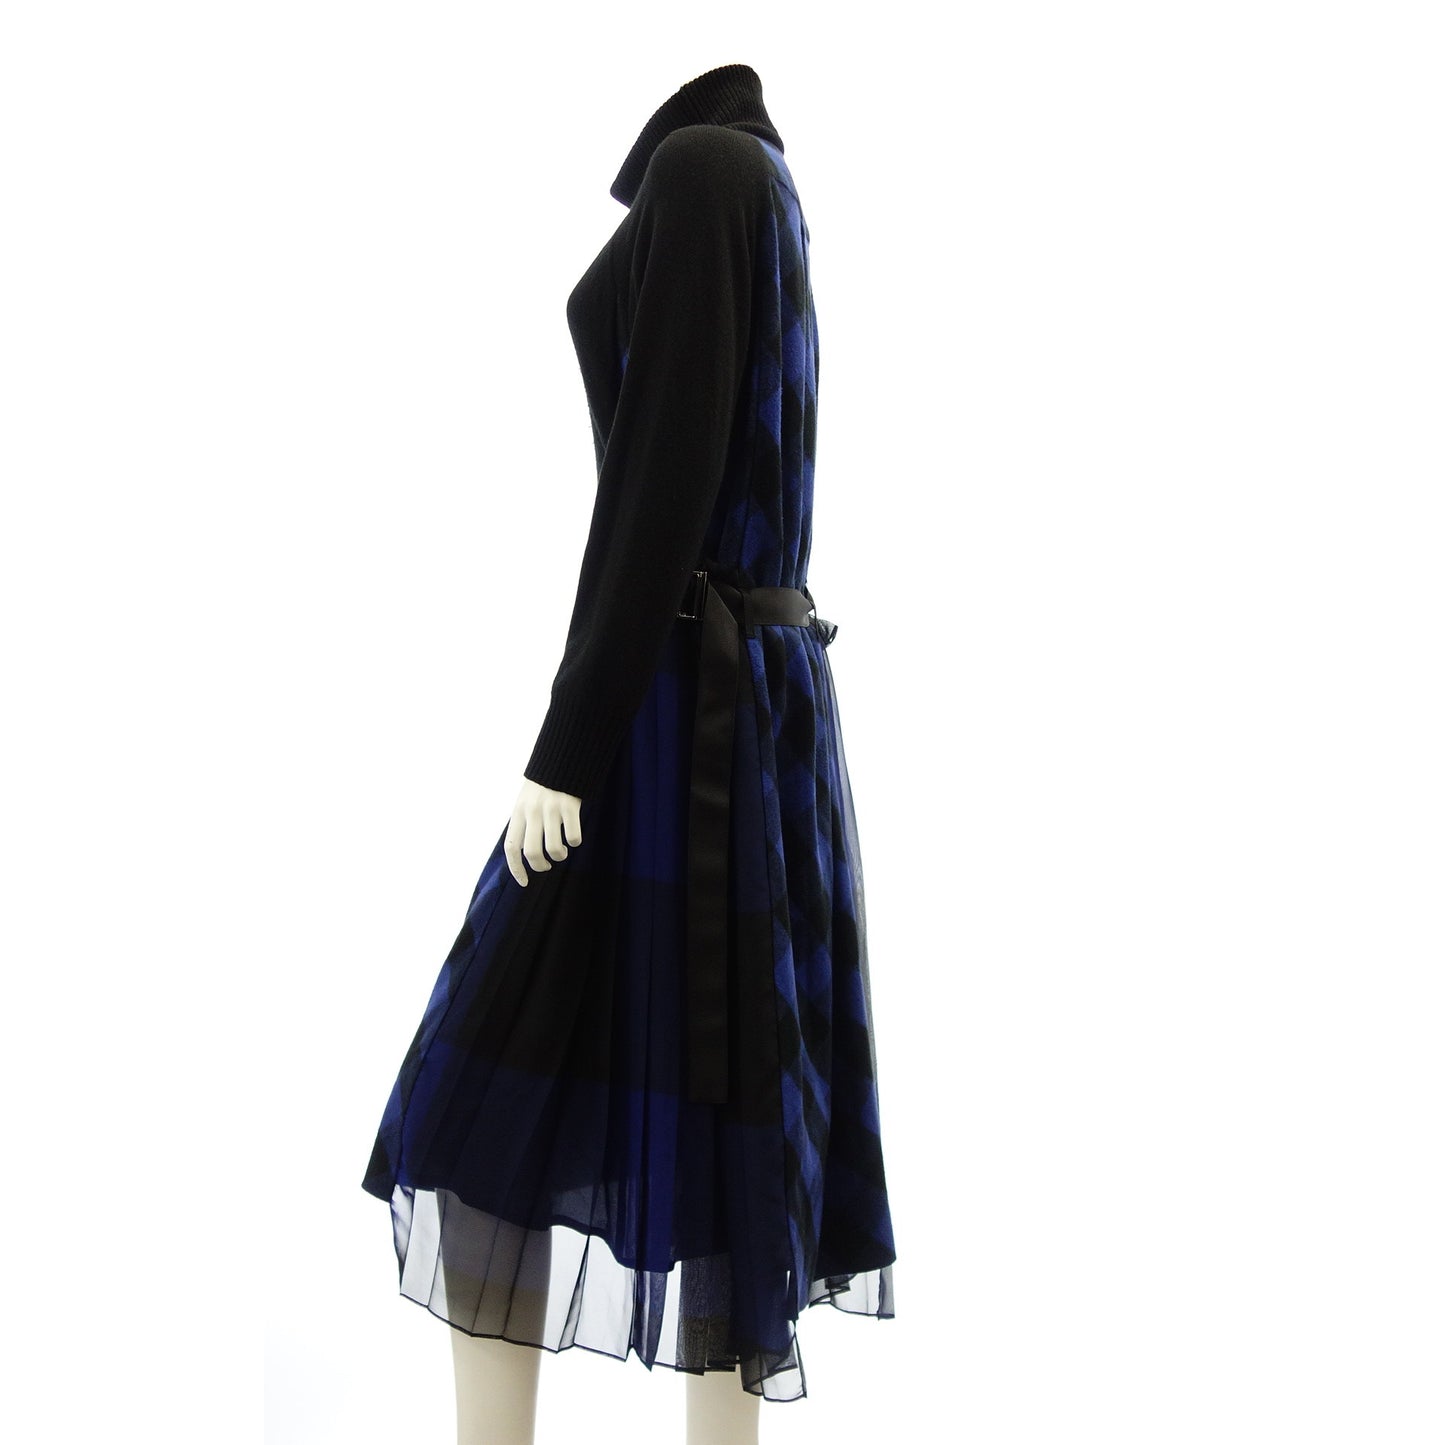 状况良好◆Sacai 针织连衣裙对接格子 18-03966 尺寸 2 黑色 x 蓝色女士 sacai [AFB36] 